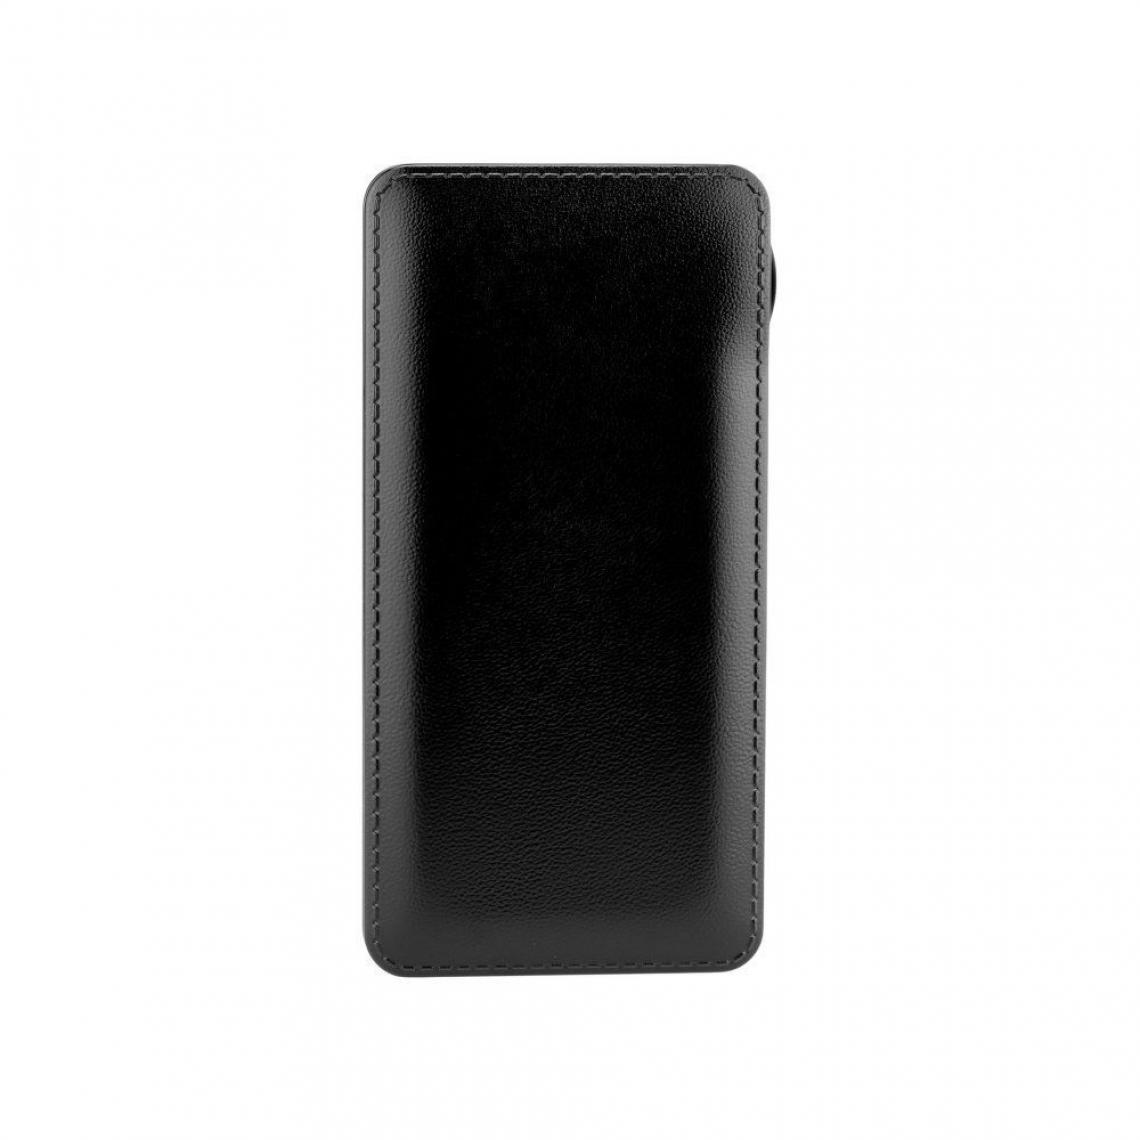 Ozzzo - Chargeur batterie externe 20000 mAh powerbank ozzzo noir pour Sony Xperia L4 2020 - Autres accessoires smartphone